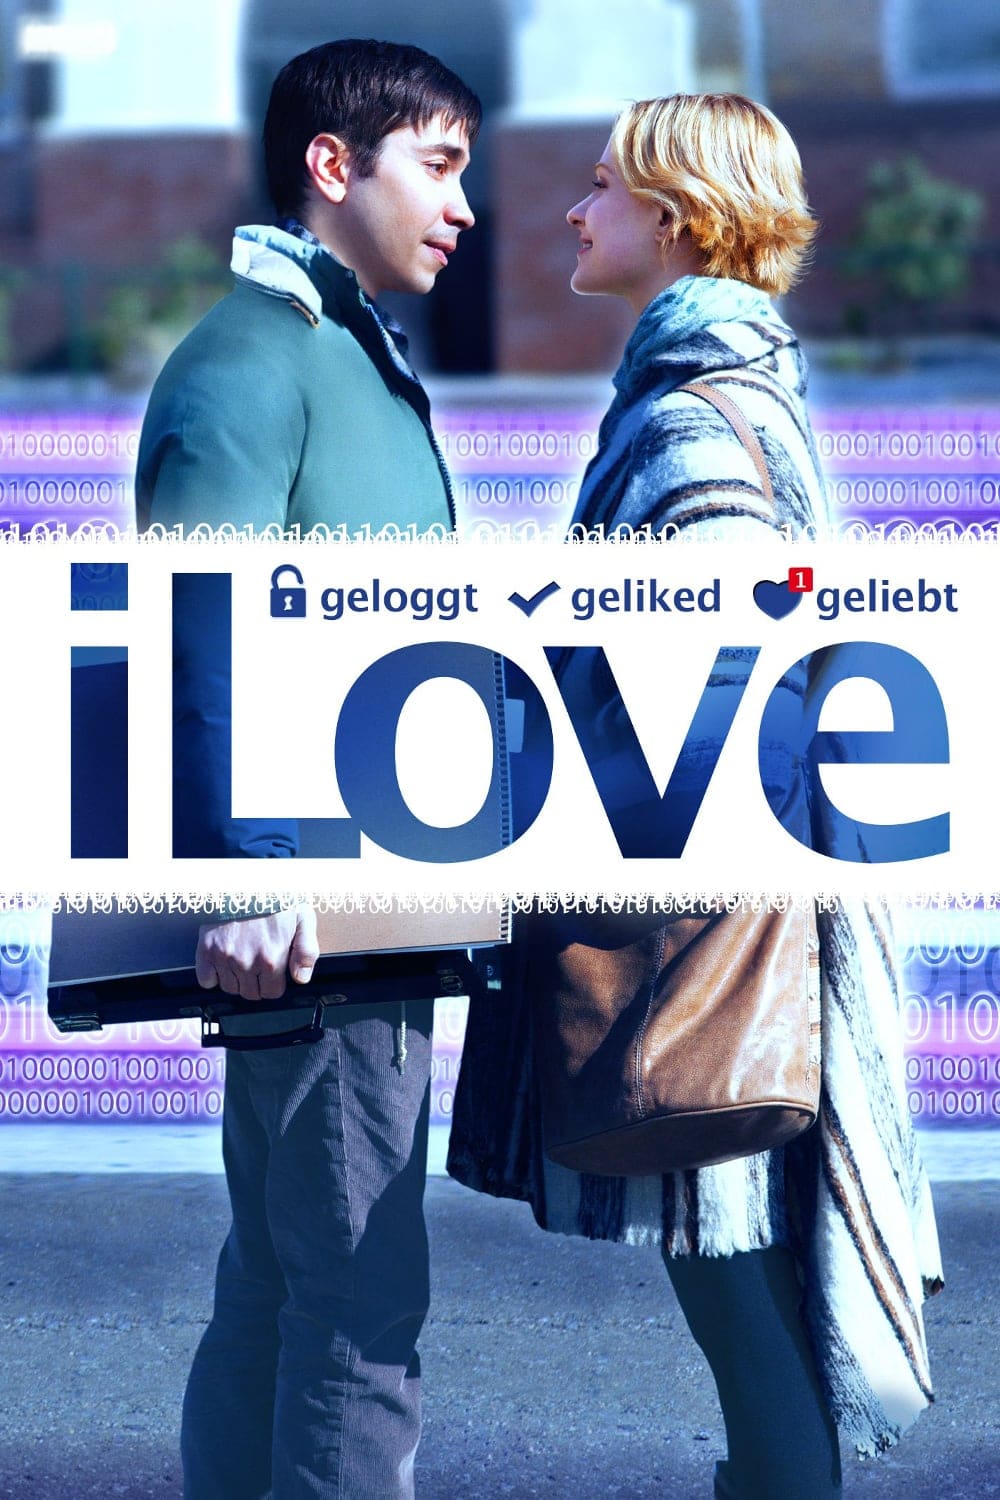 Plakat von "iLove - geloggt, geliked, geliebt"